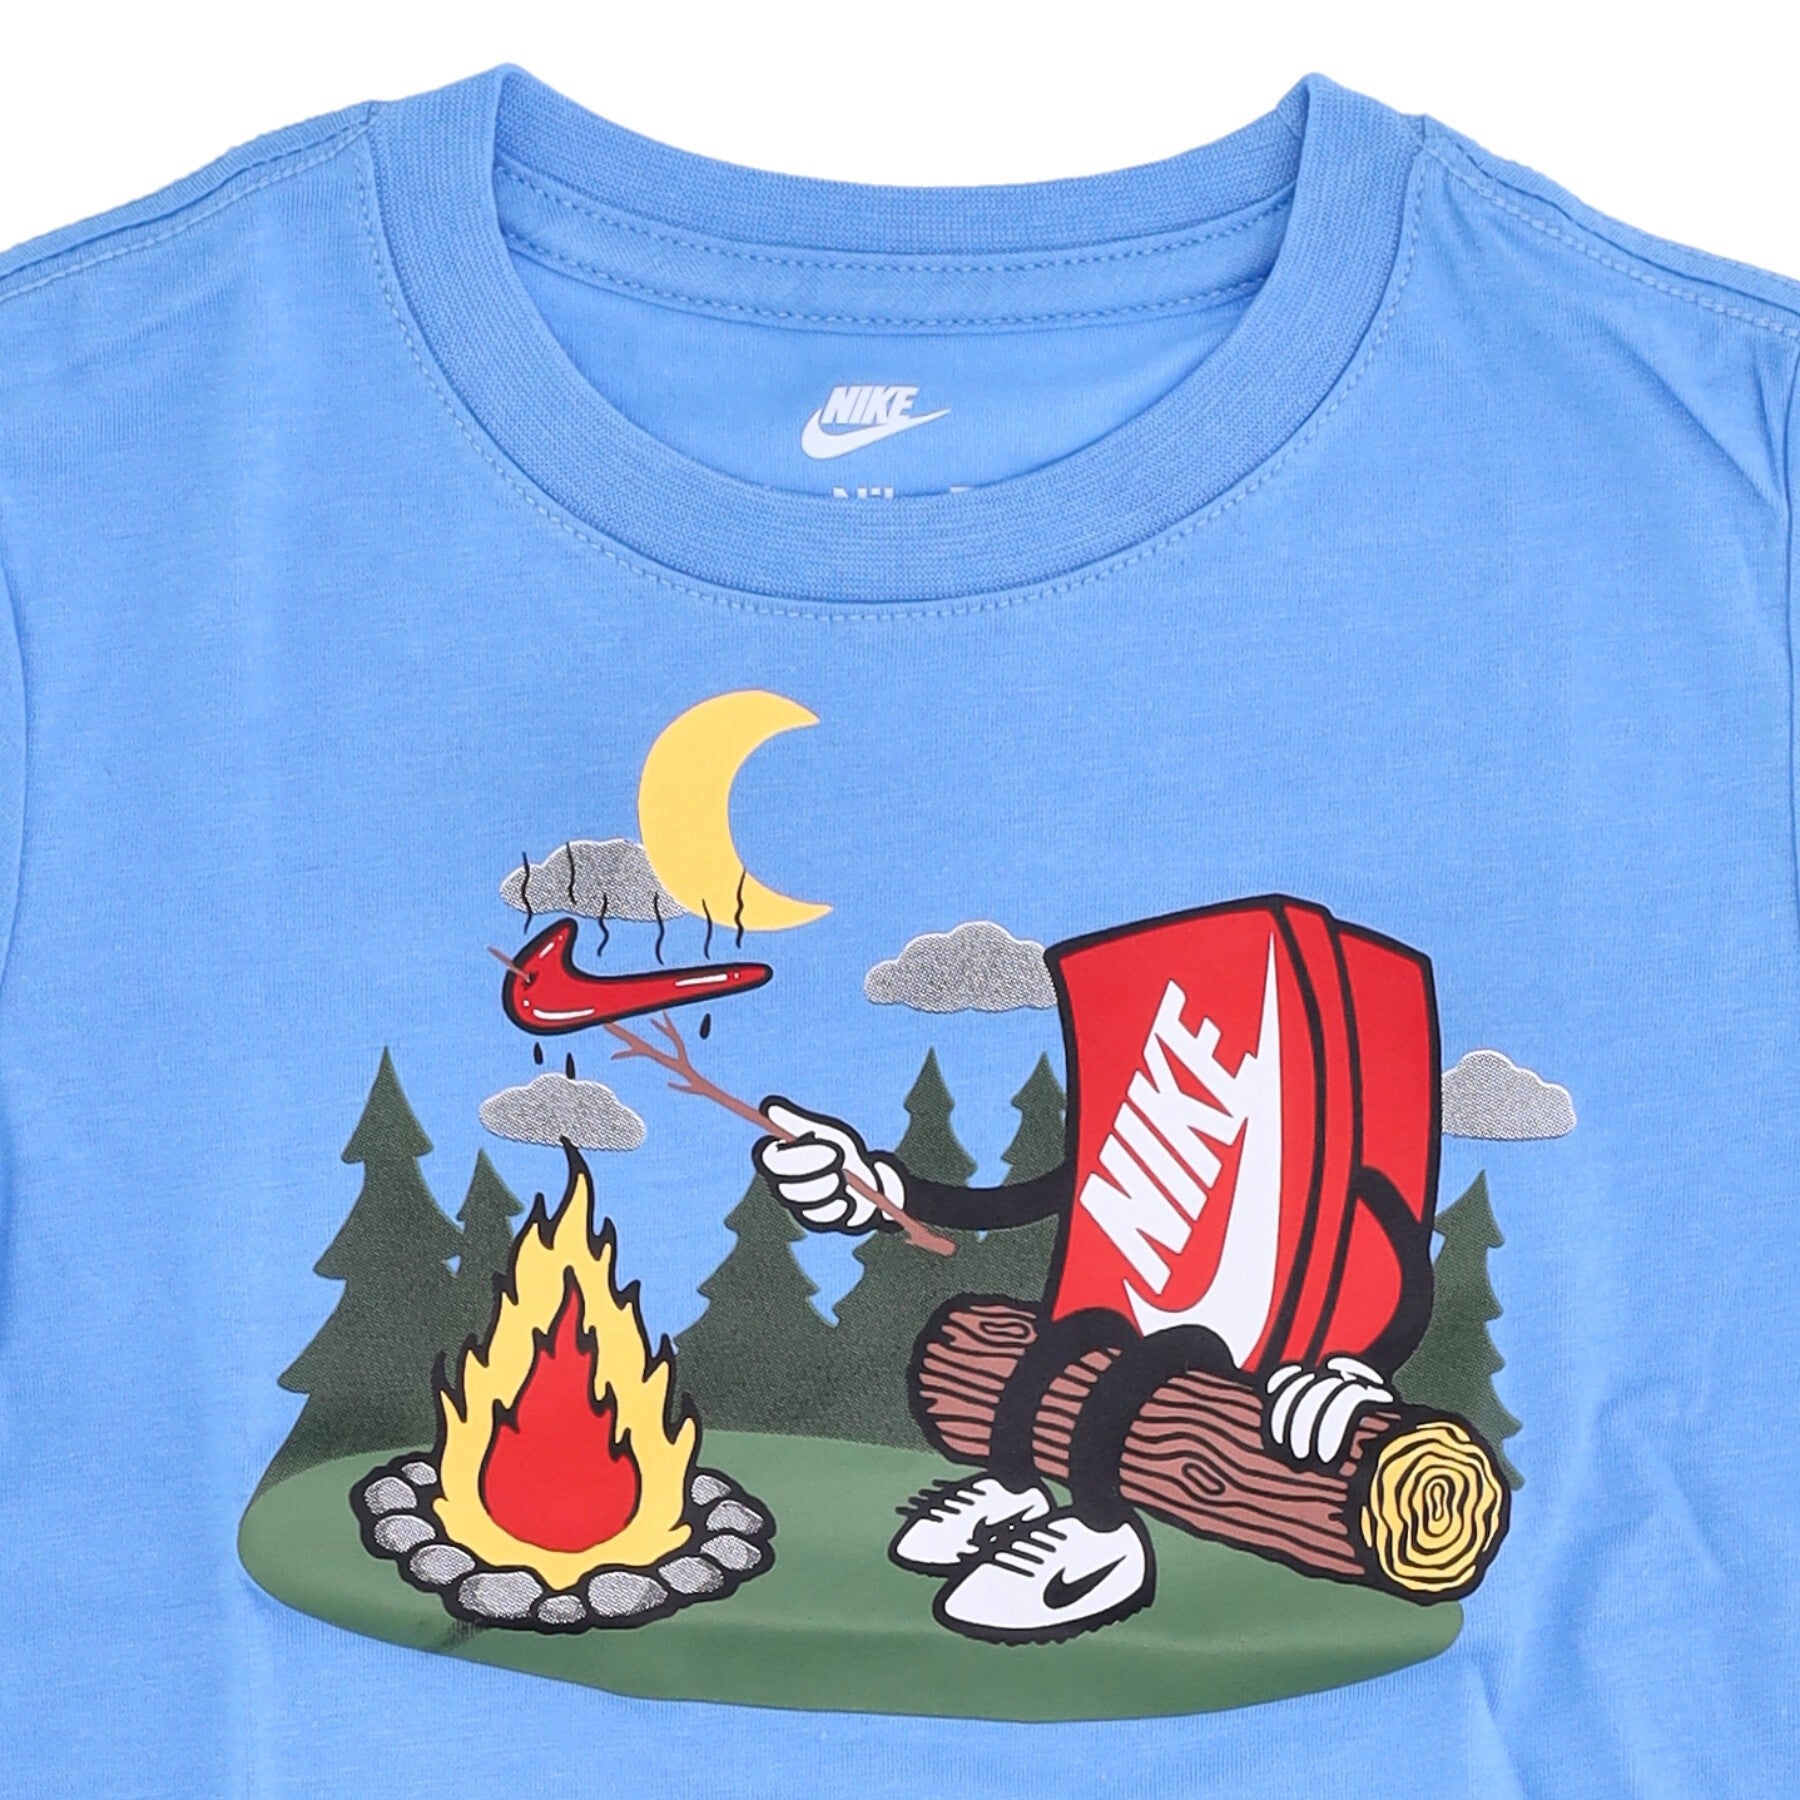 Campfire University Blue Boxy Child T-Shirt